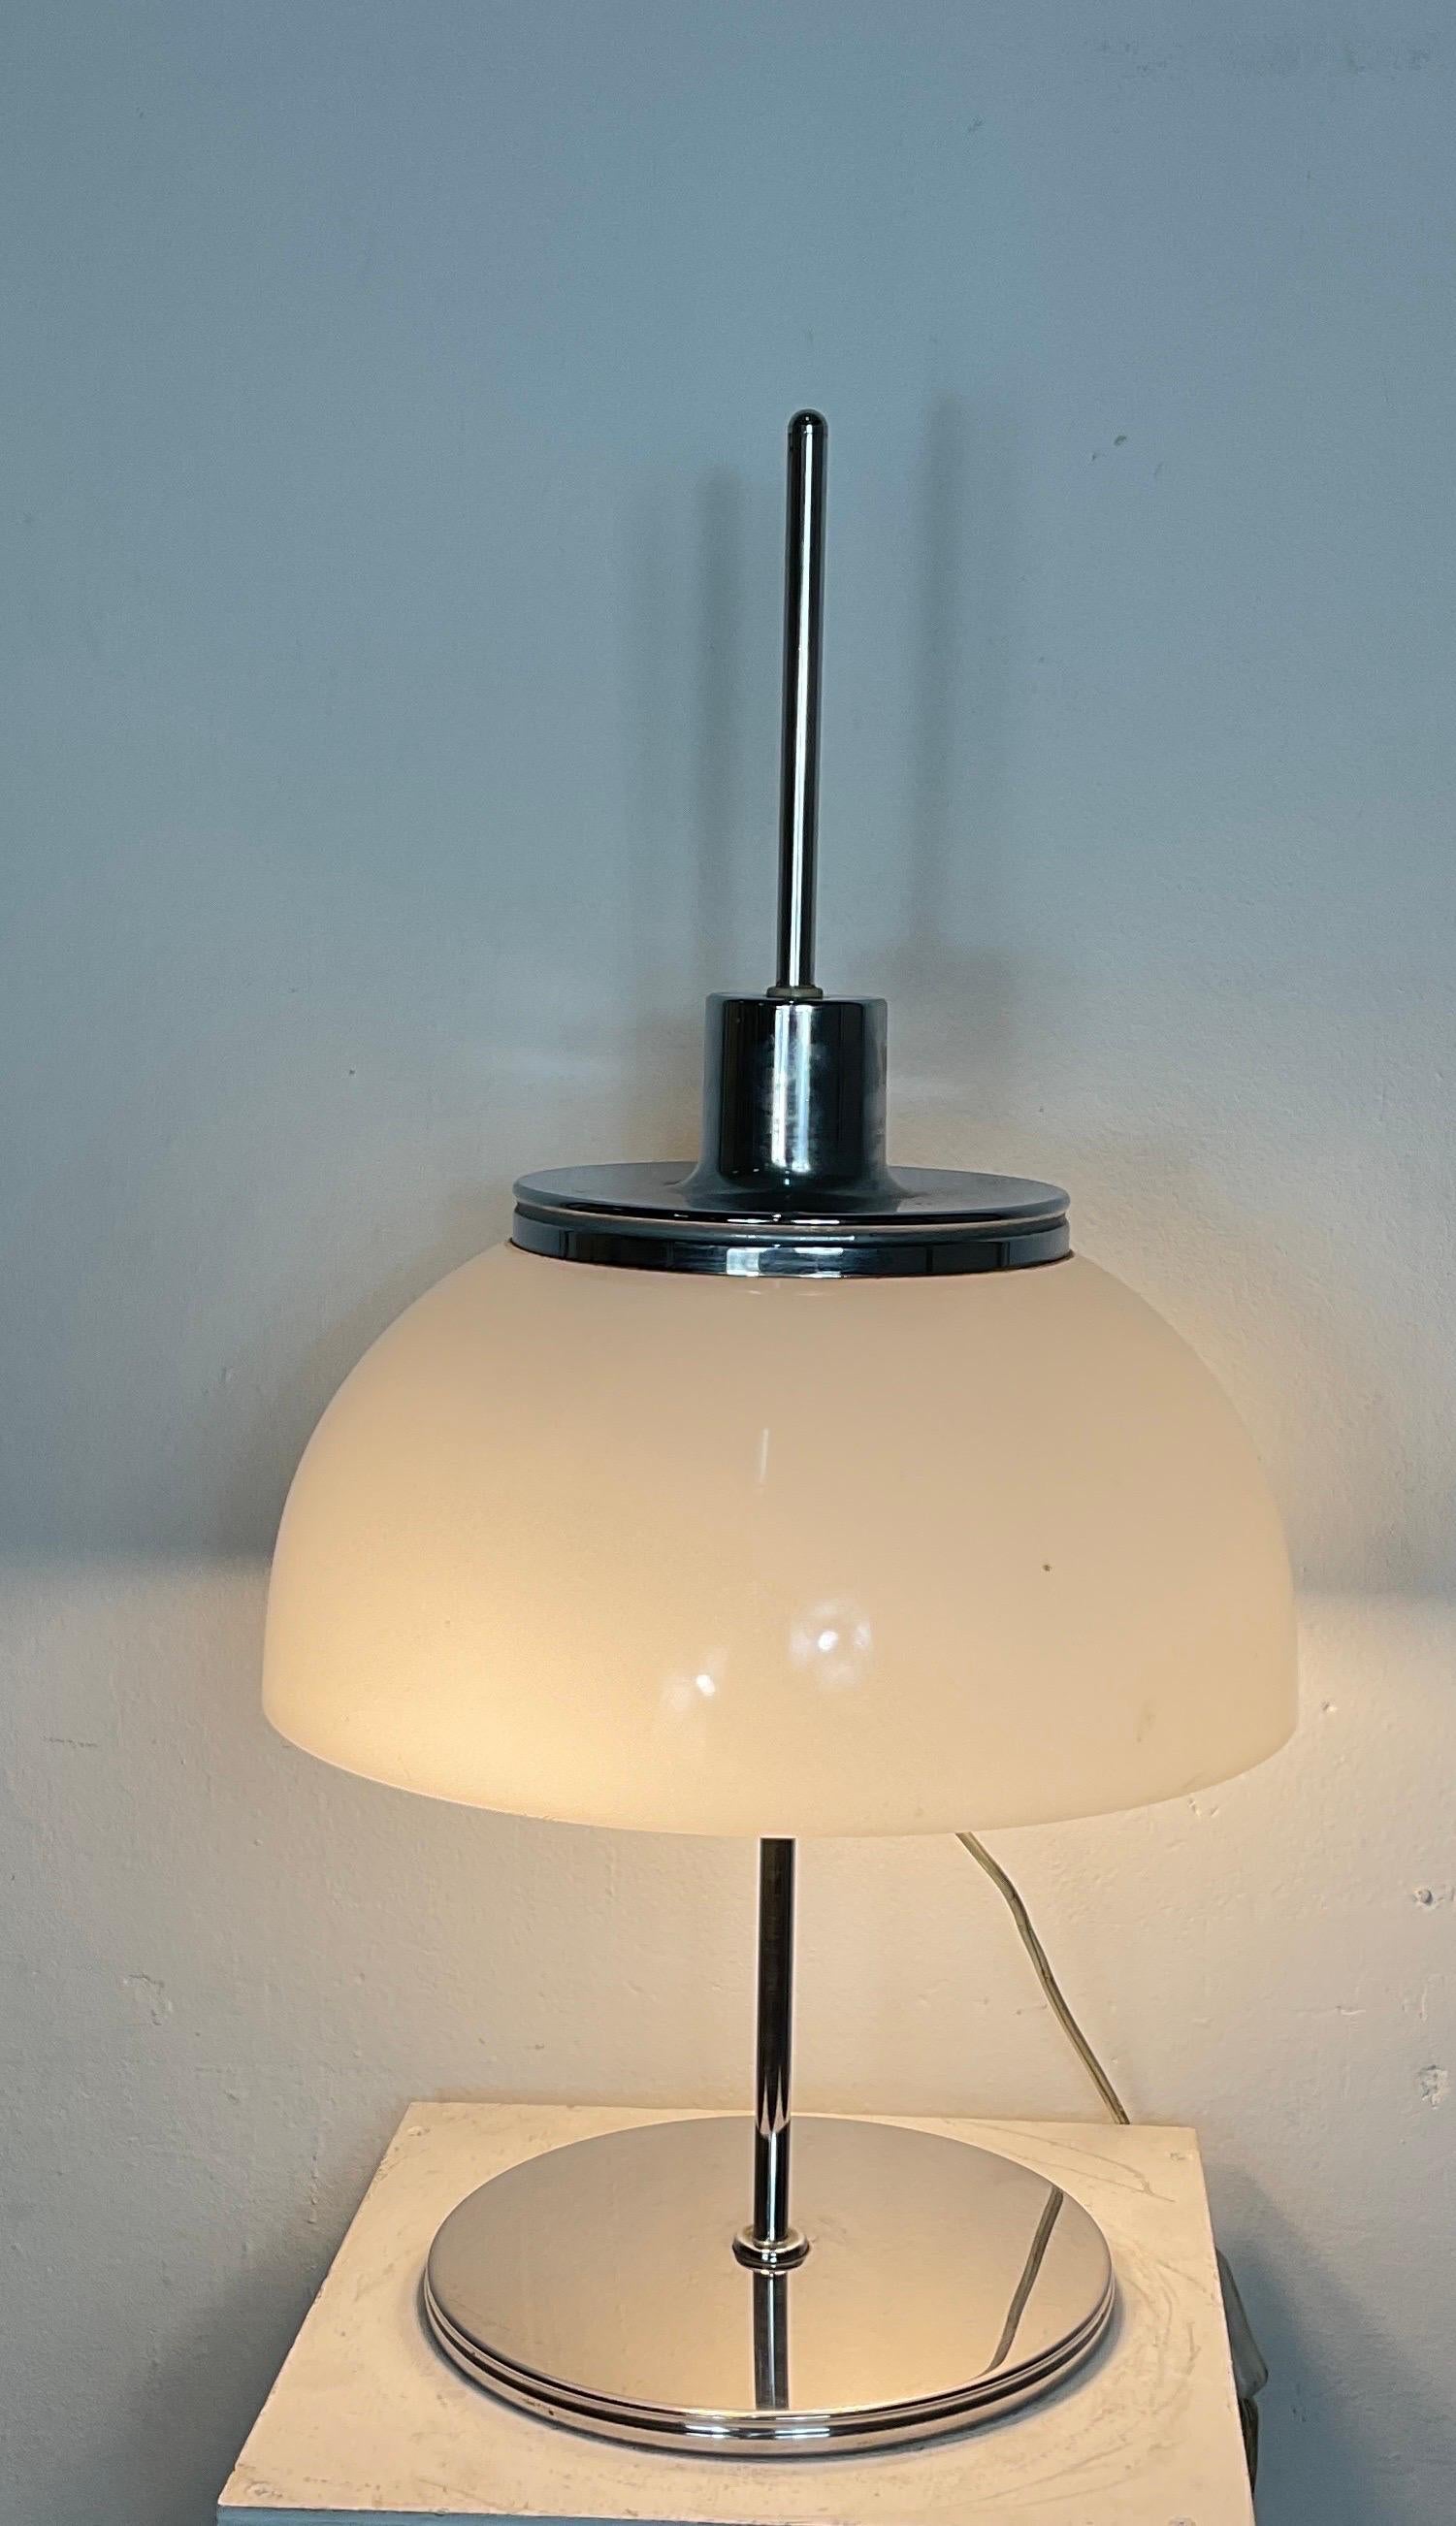 Seltene italienische Tischleuchte, entworfen von dem bekannten italienischen Designer Harvey Guzzini.
Guzzini entwarf diese Leuchte in den 1970er Jahren für den Hersteller Meblo. 
 
Die Lampe hat einen runden Sockel aus verchromtem Eisen.